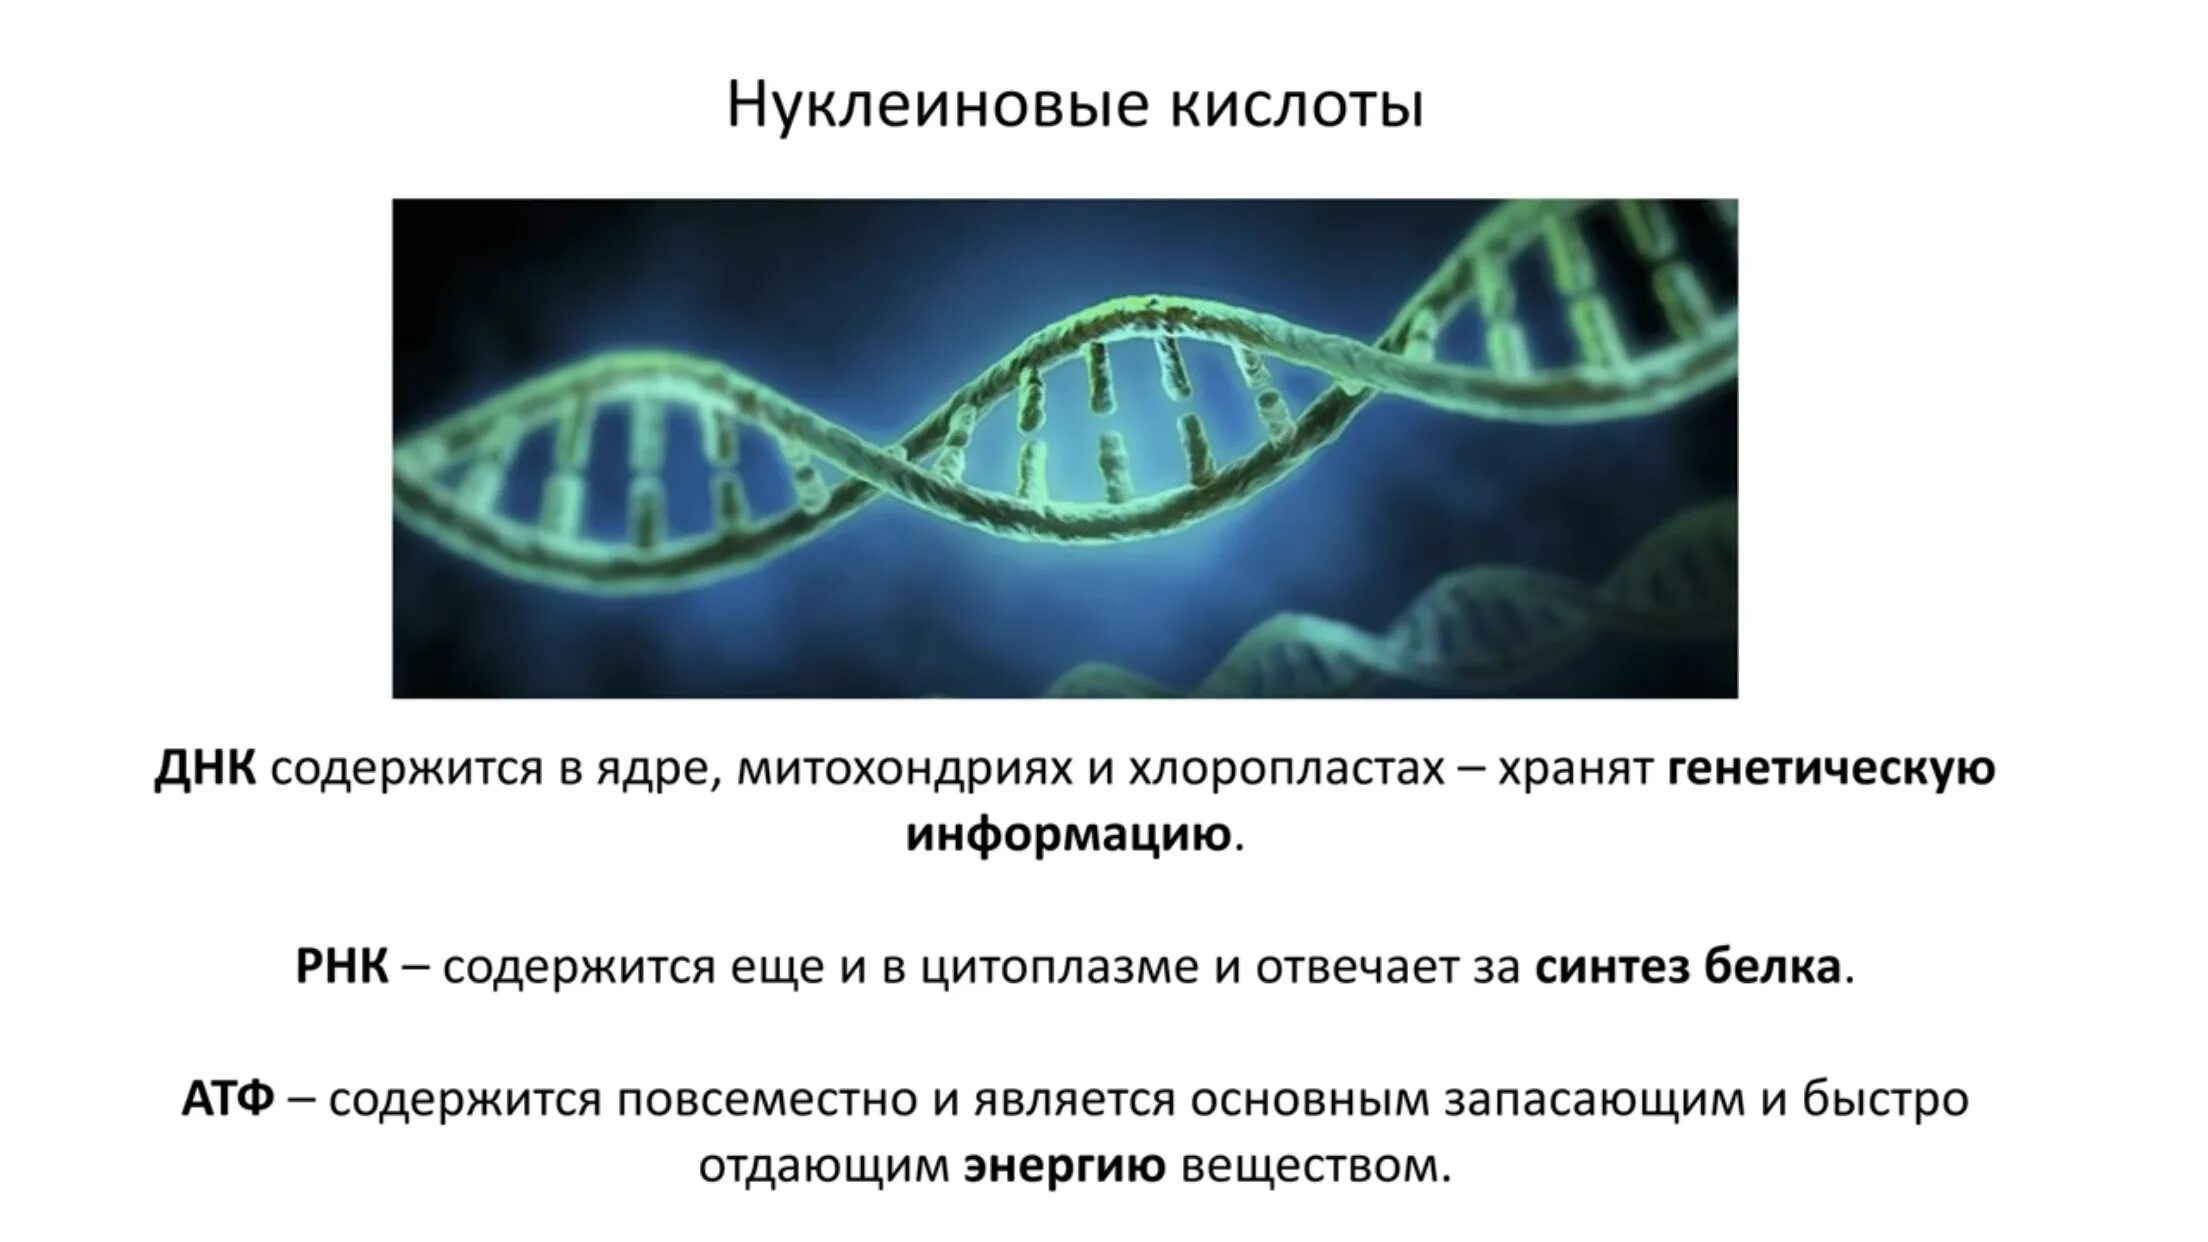 Днк кольцевая расположена. Кольцевая ДНК В хлоропластах. В ядре содержатся нуклеиновые кислоты.